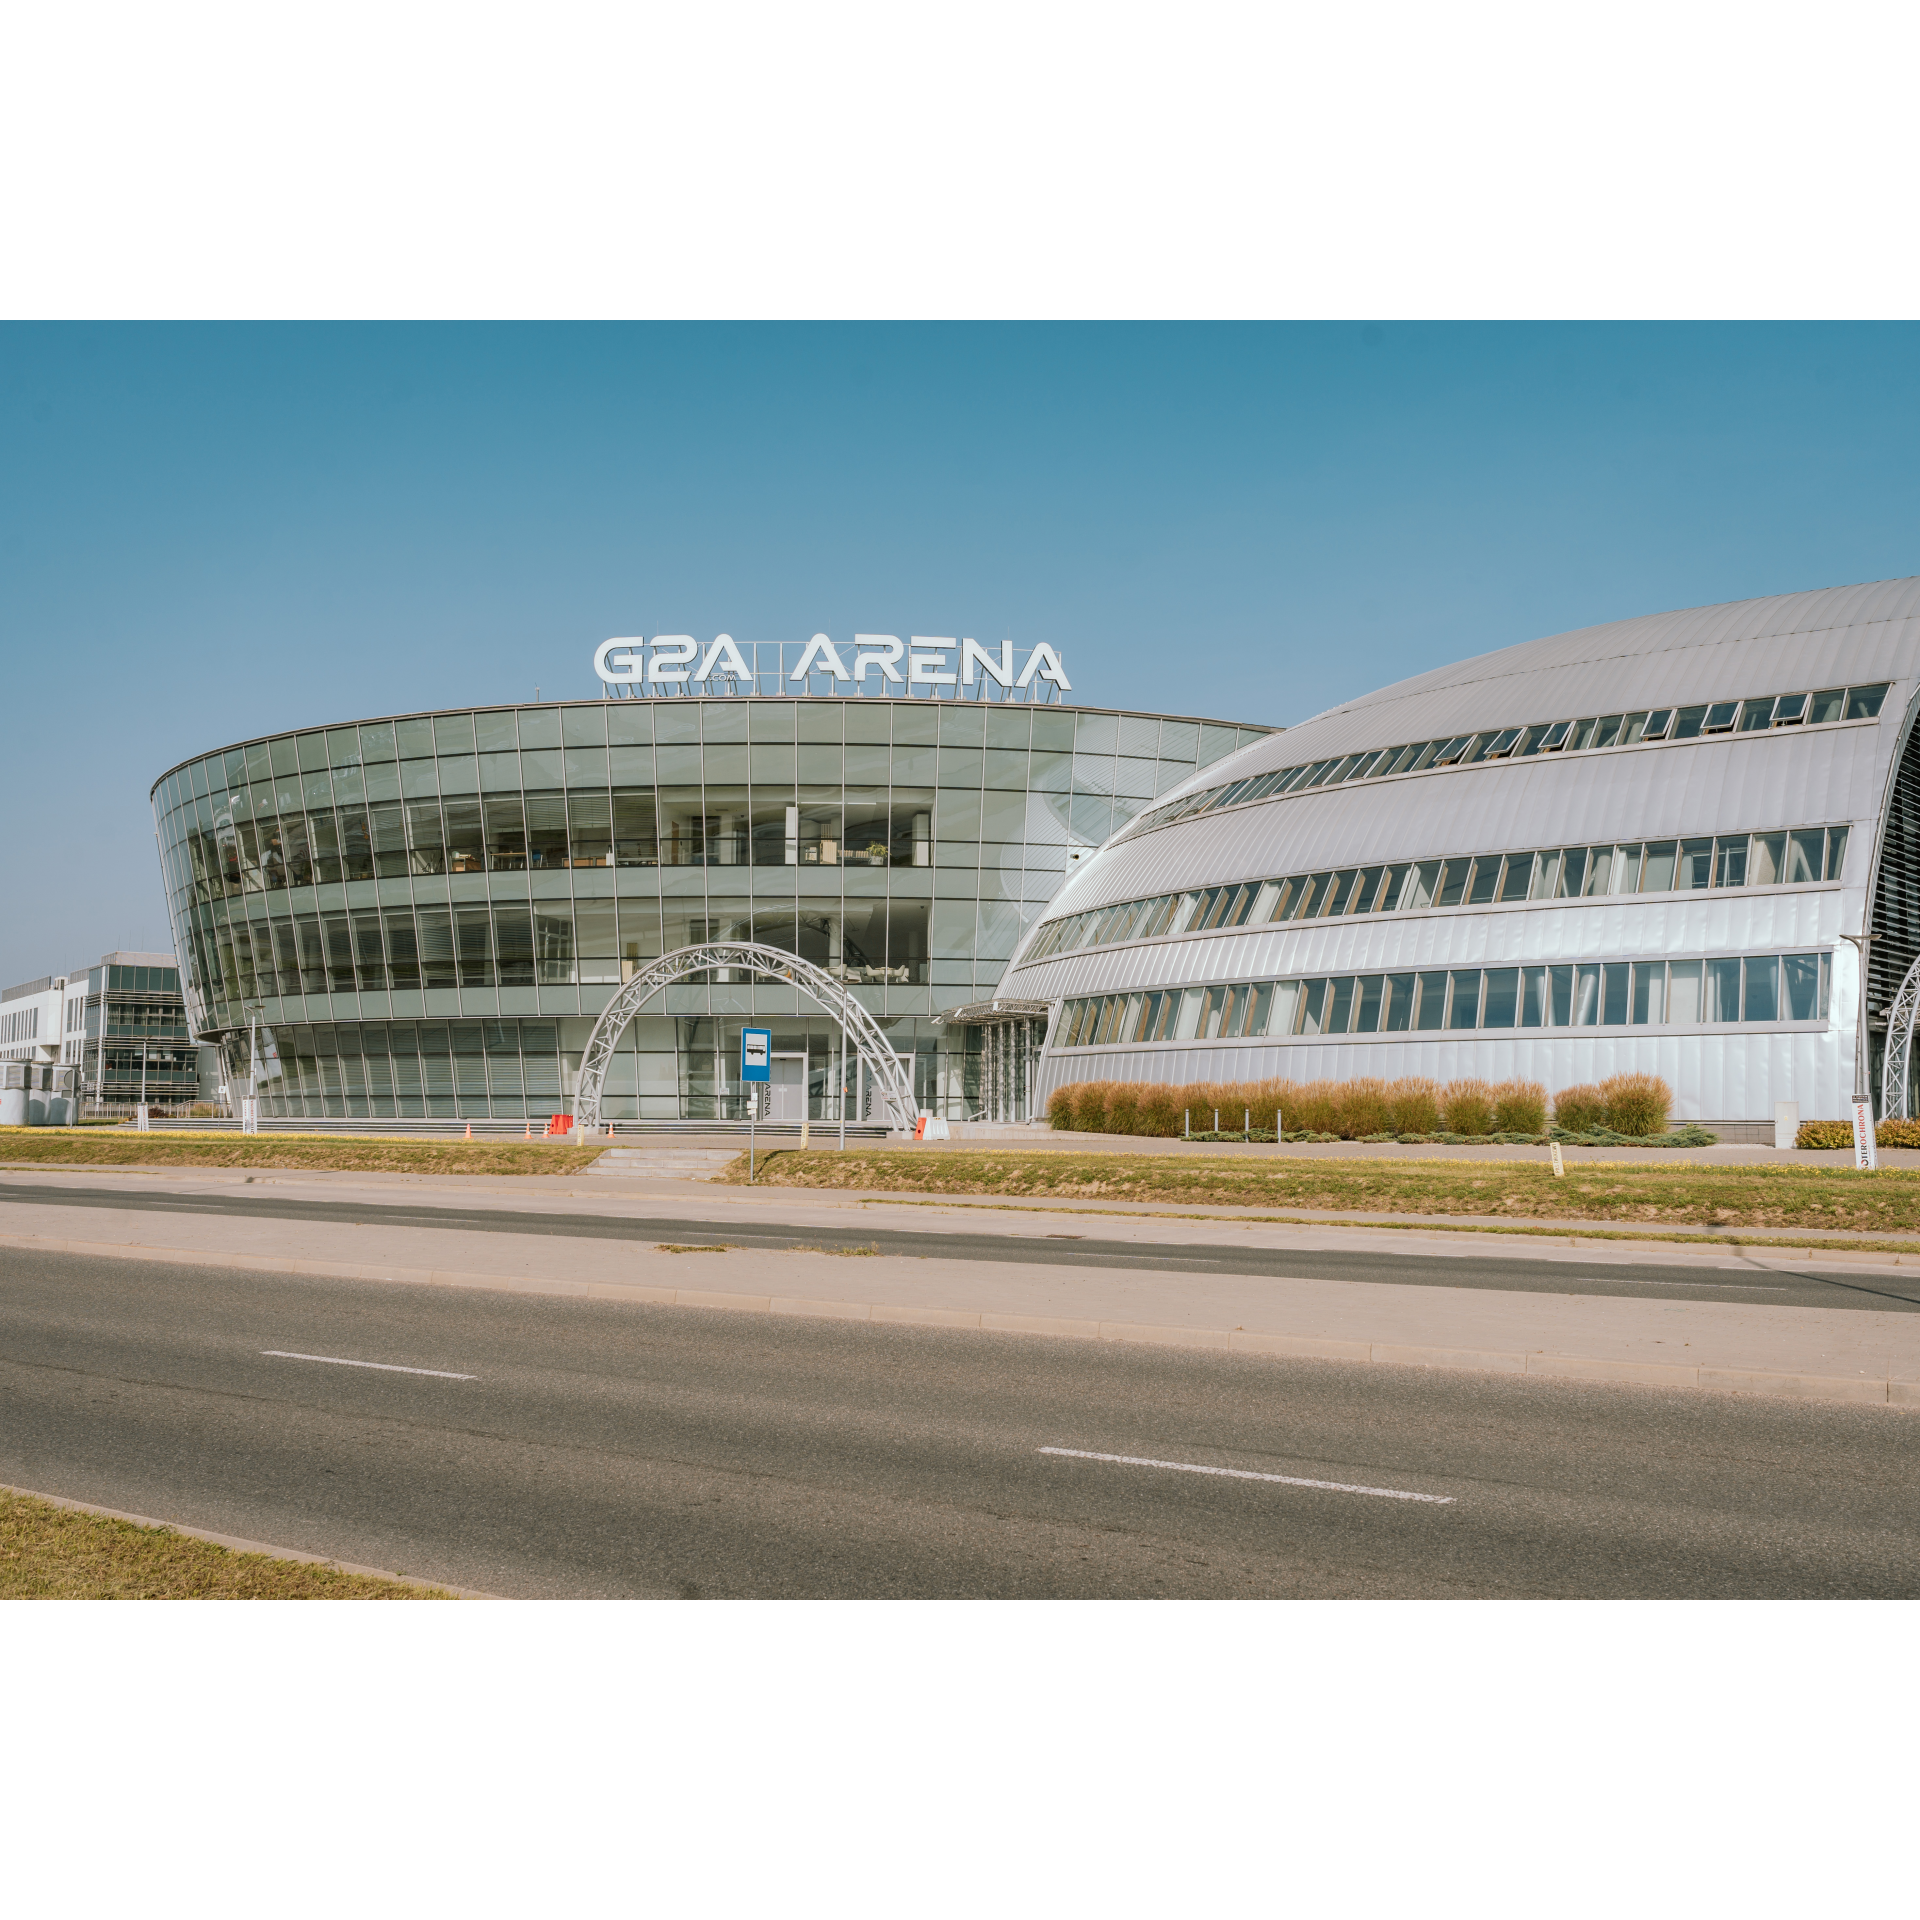 G2A Arena od frontu